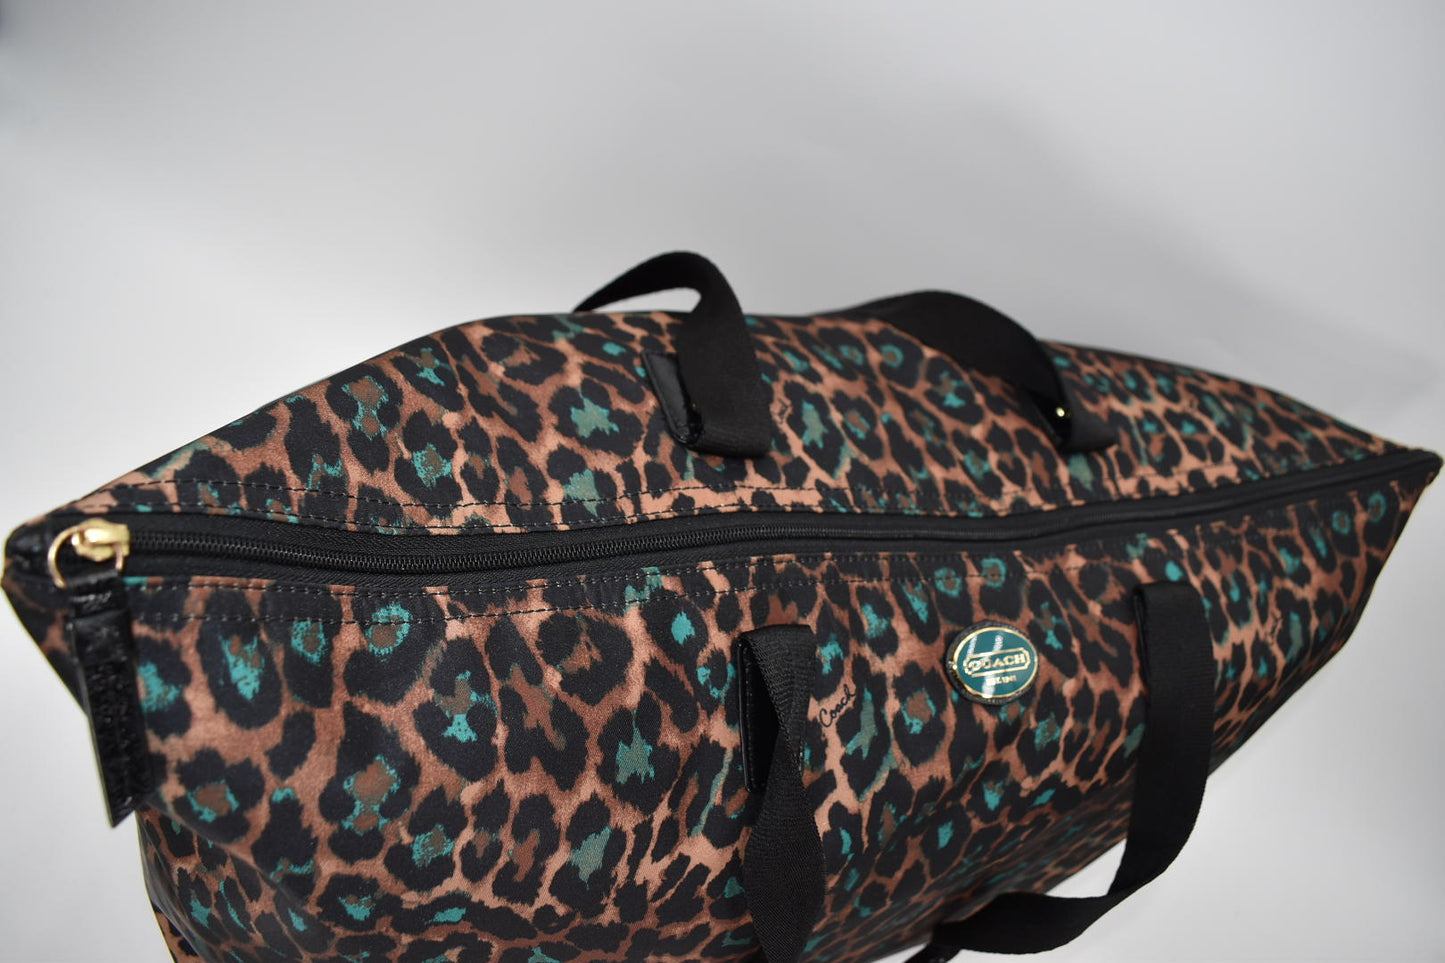 Coach Getaway Large Travel Packable Weekend Tote Bag in Multi Ocelot